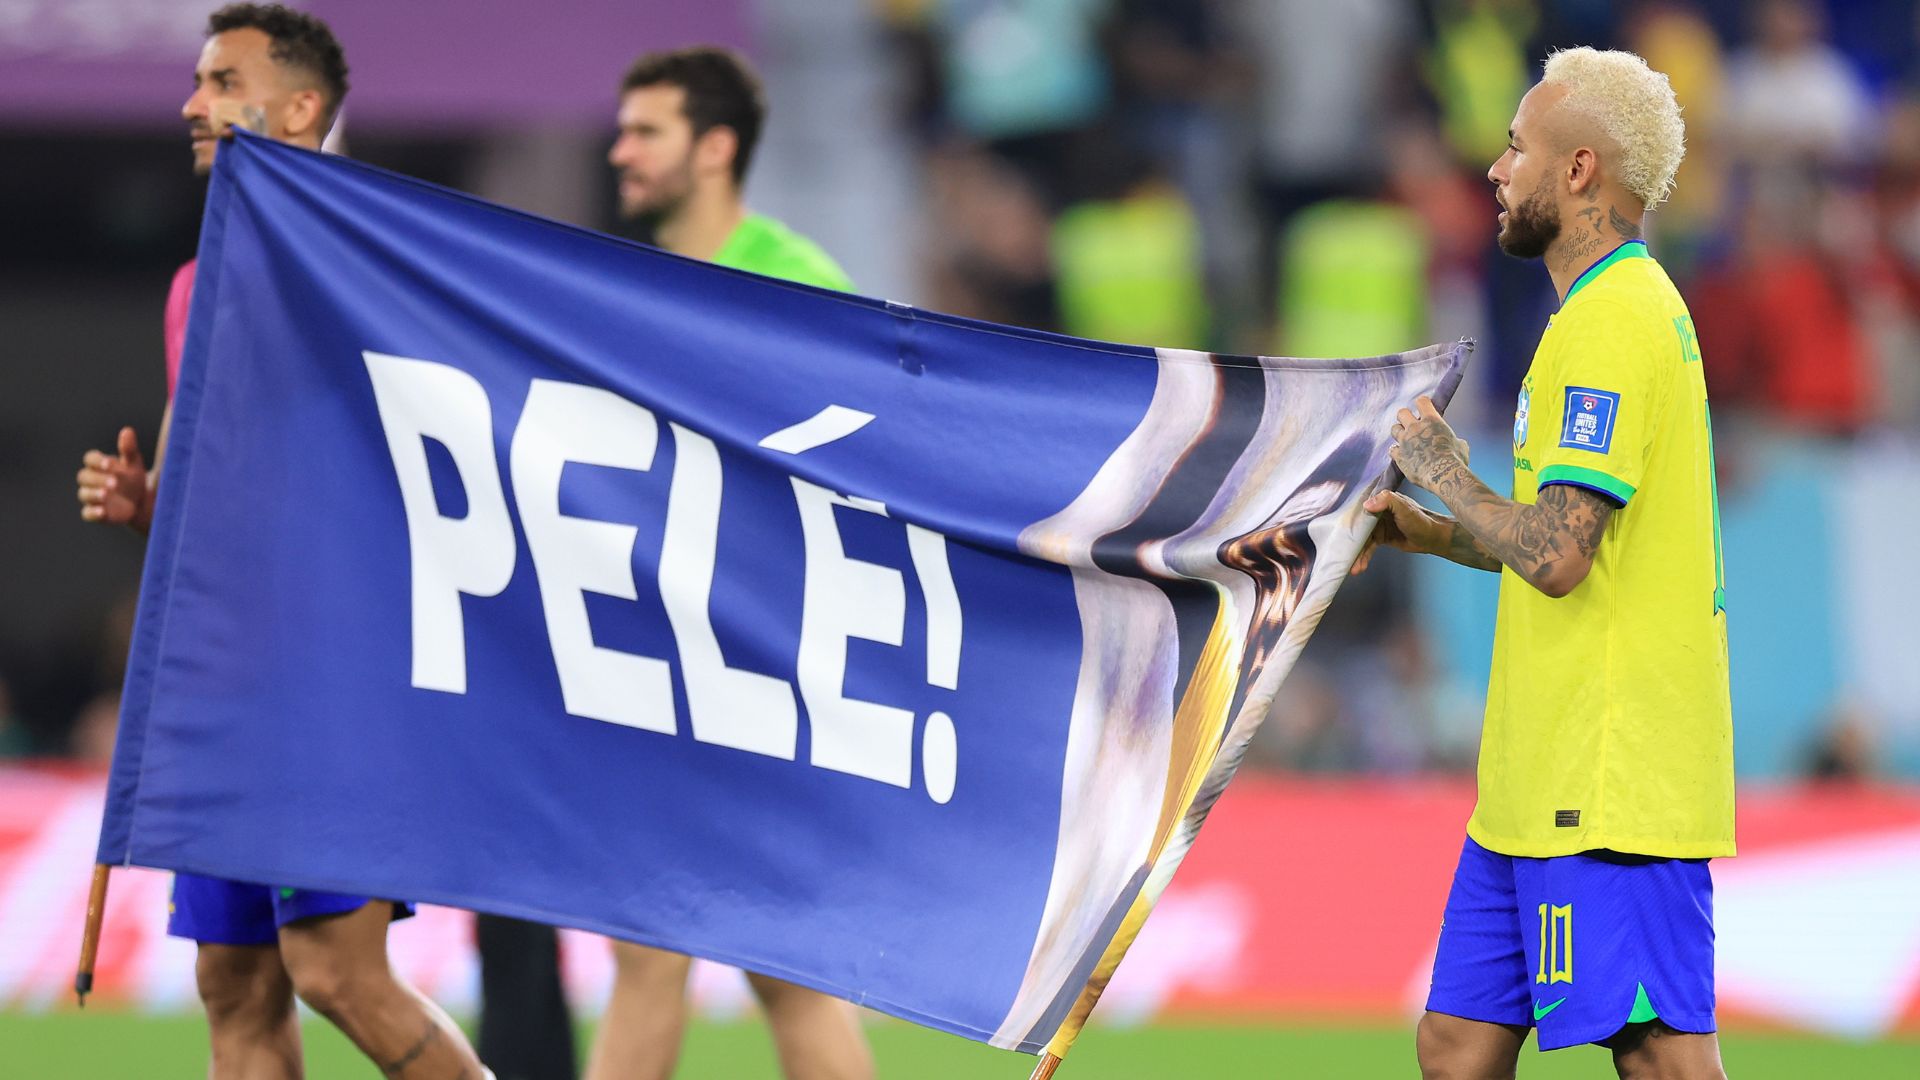 Homenagem da Seleção Brasileira a Pelé durante a Copa do Mundo (Crédito: Getty Images)